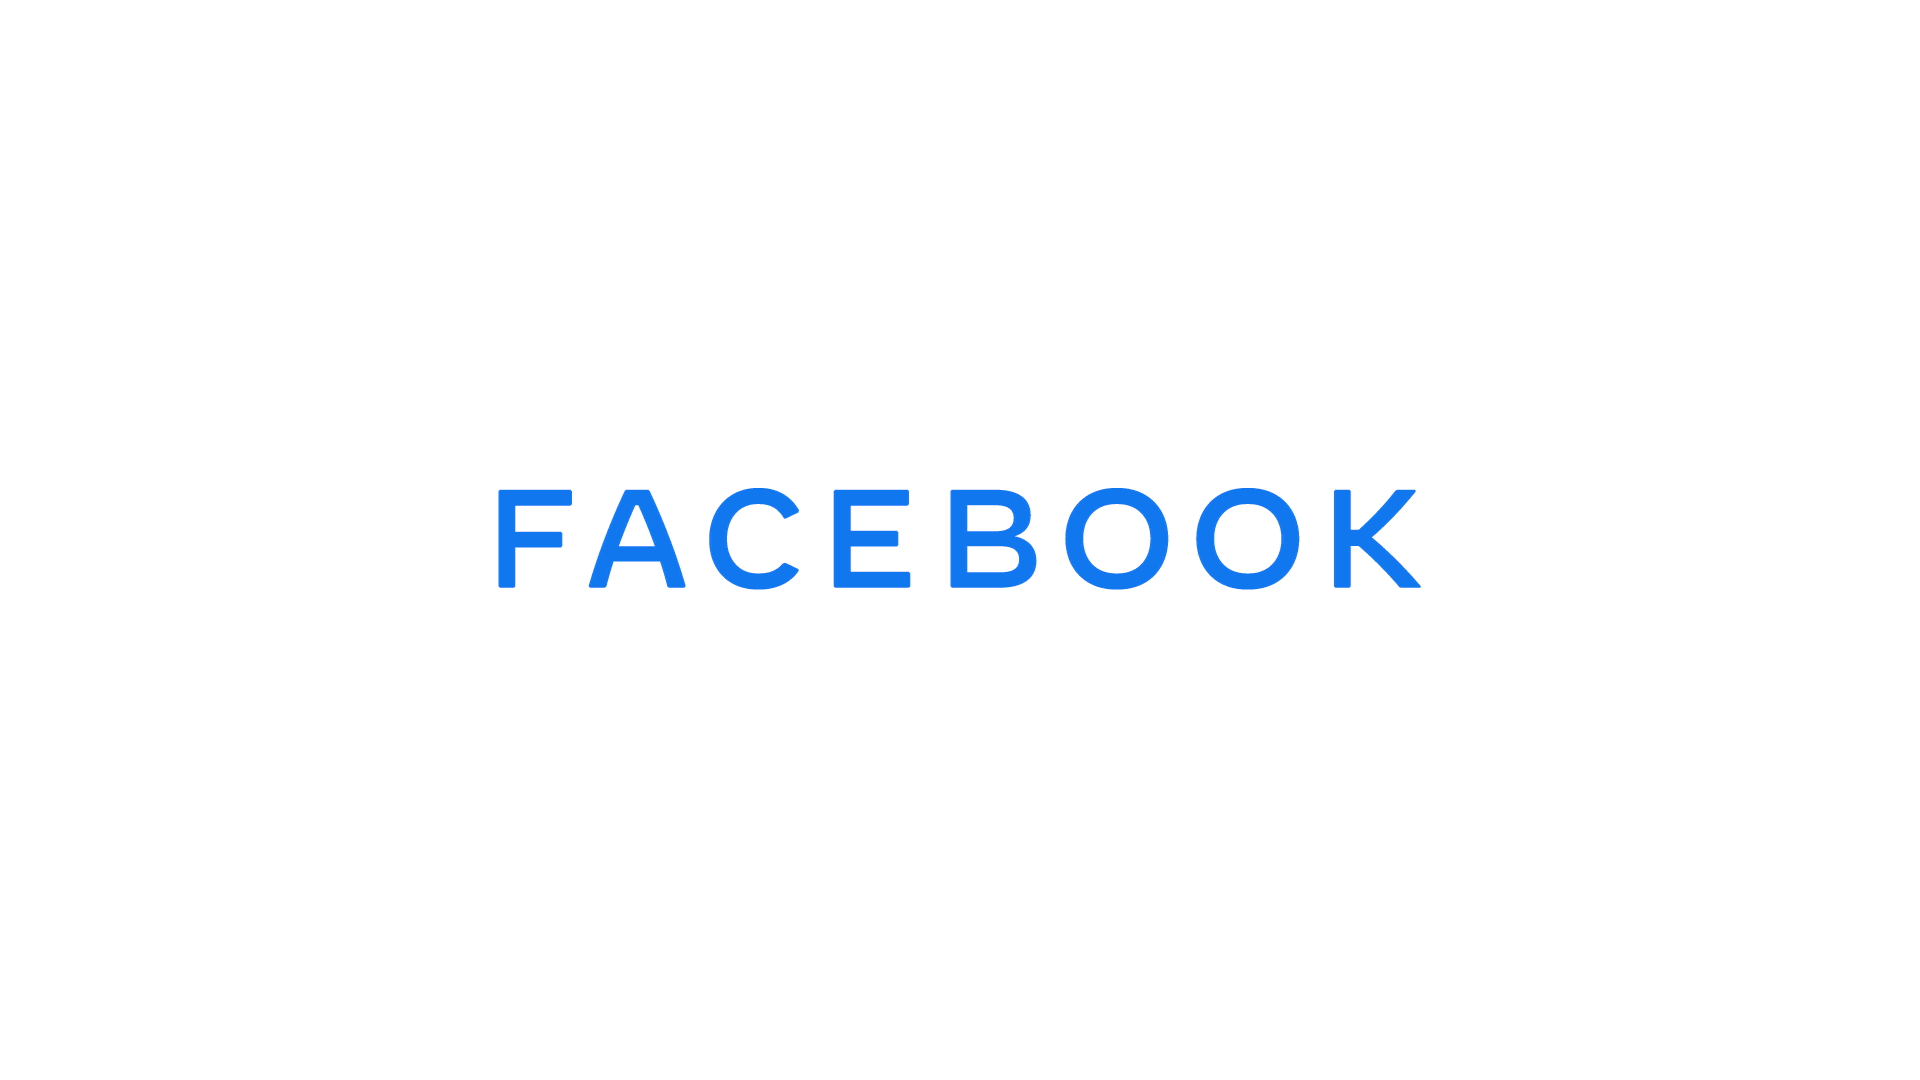 Facebookin typerä muutos ratkaisee logoongelmat